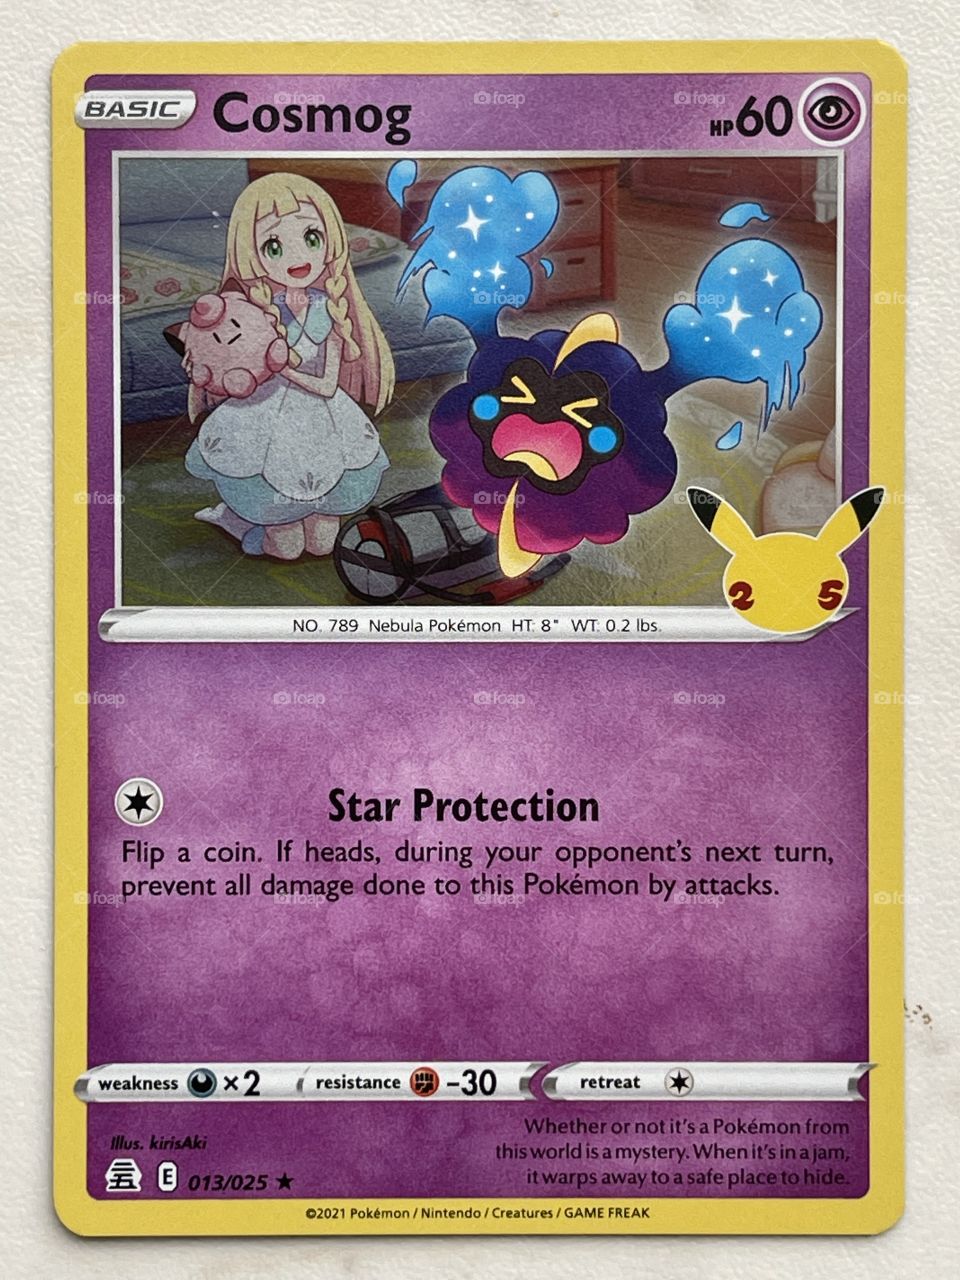 Pokémon Trading Card Game Dark Sylveon Pikachu